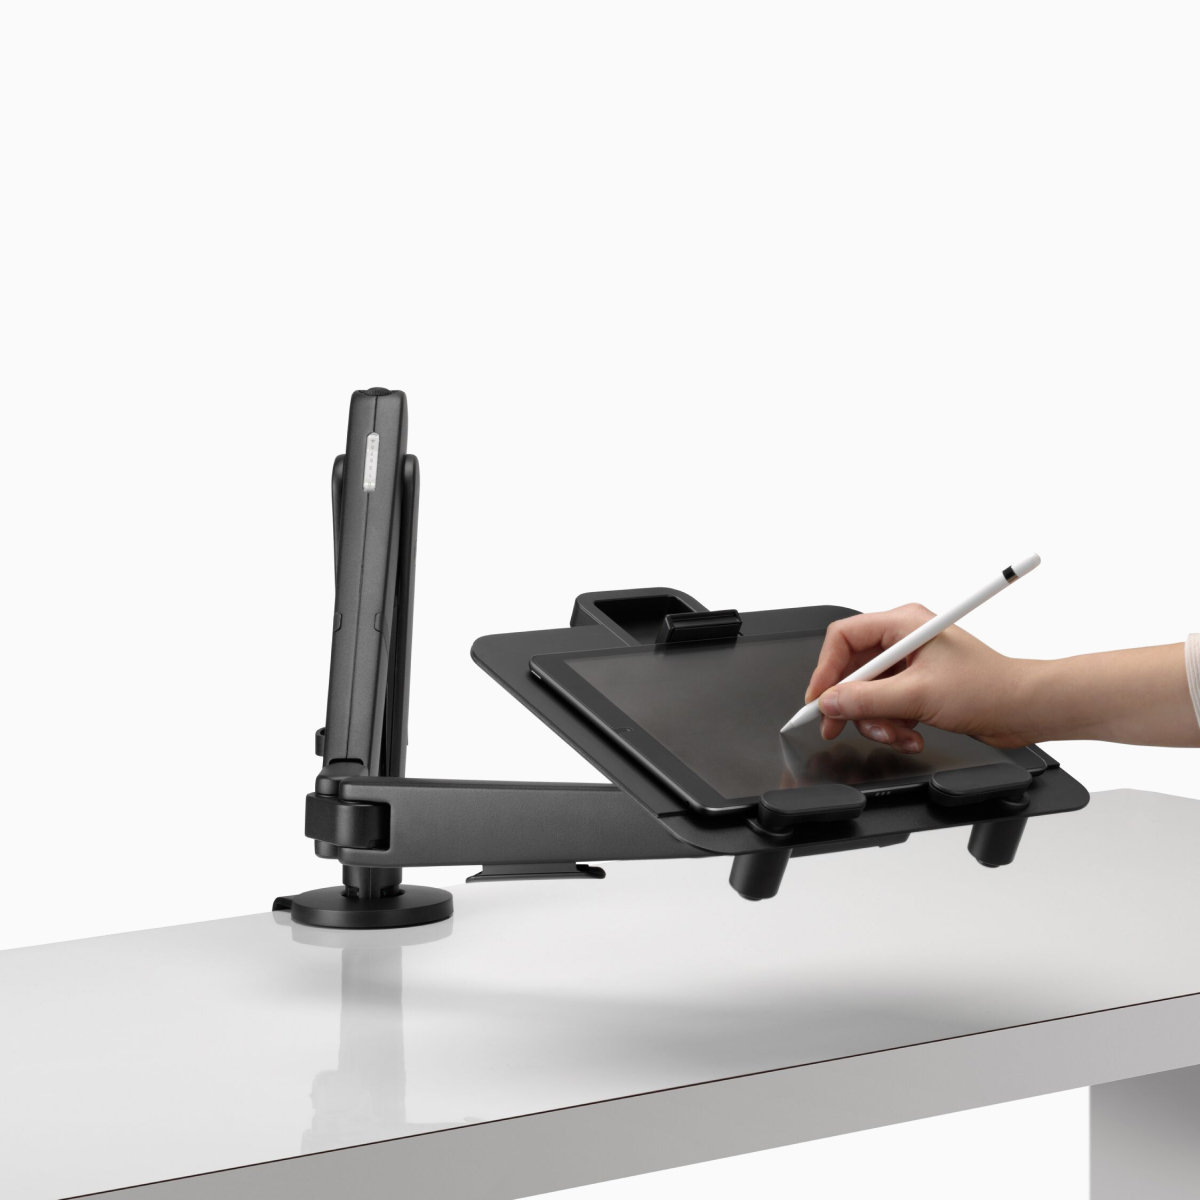 De hand van een persoon is afgebeeld terwijl deze tekent op een tablet ondersteund in landschapspositie door een Ollin-laptop en tabletsteun die is aangesloten op een zwarte Ollin-monitorarm.